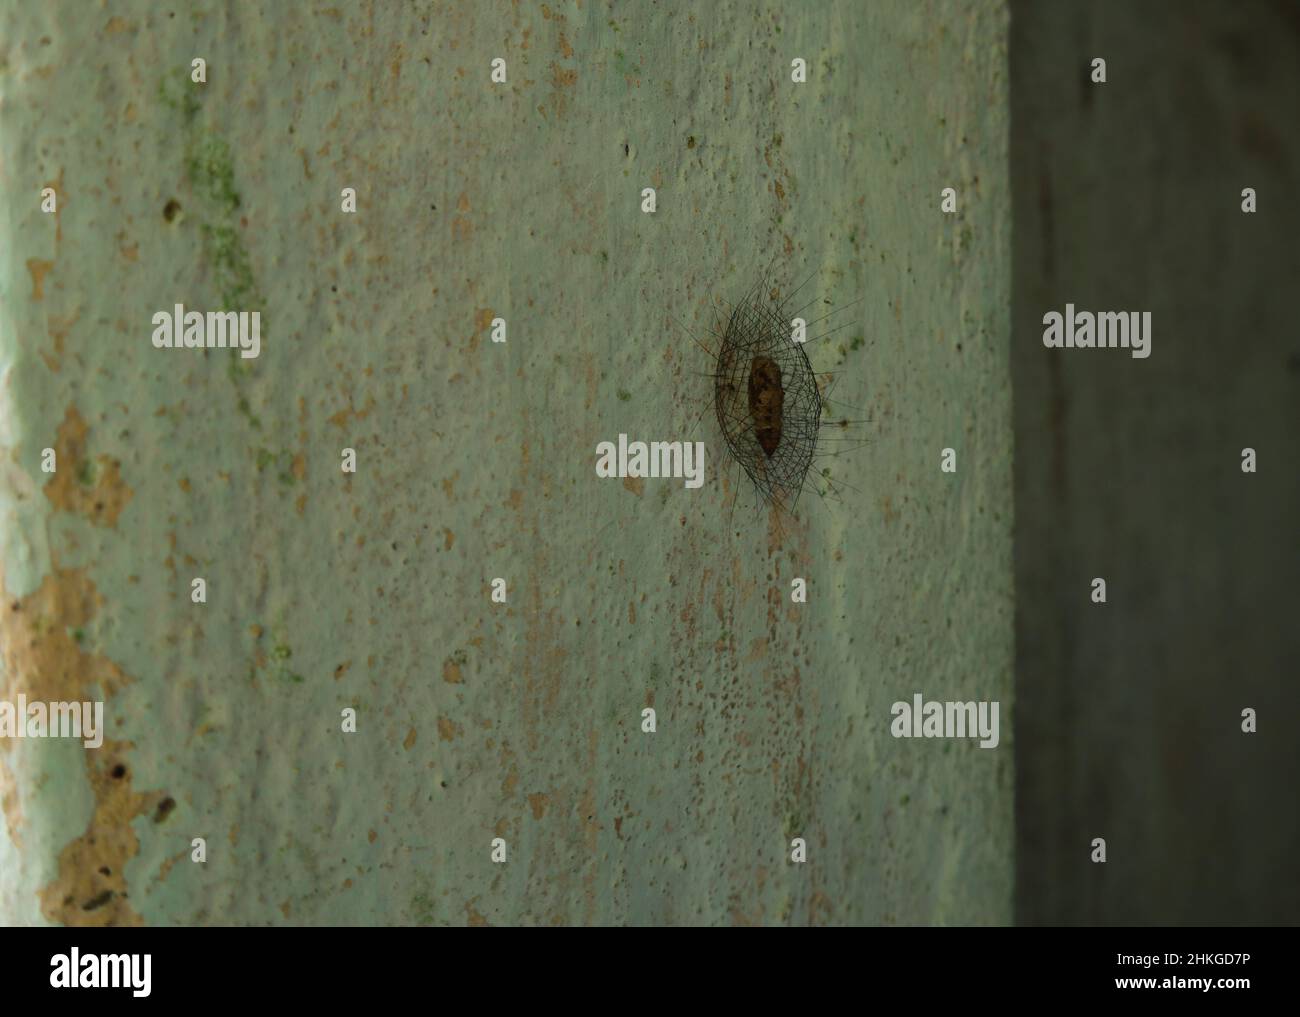 Un Cocoon di insetto sconosciuto su parete di cemento. Questo bozzolo è protetto da uno strato protettivo peloso Foto Stock